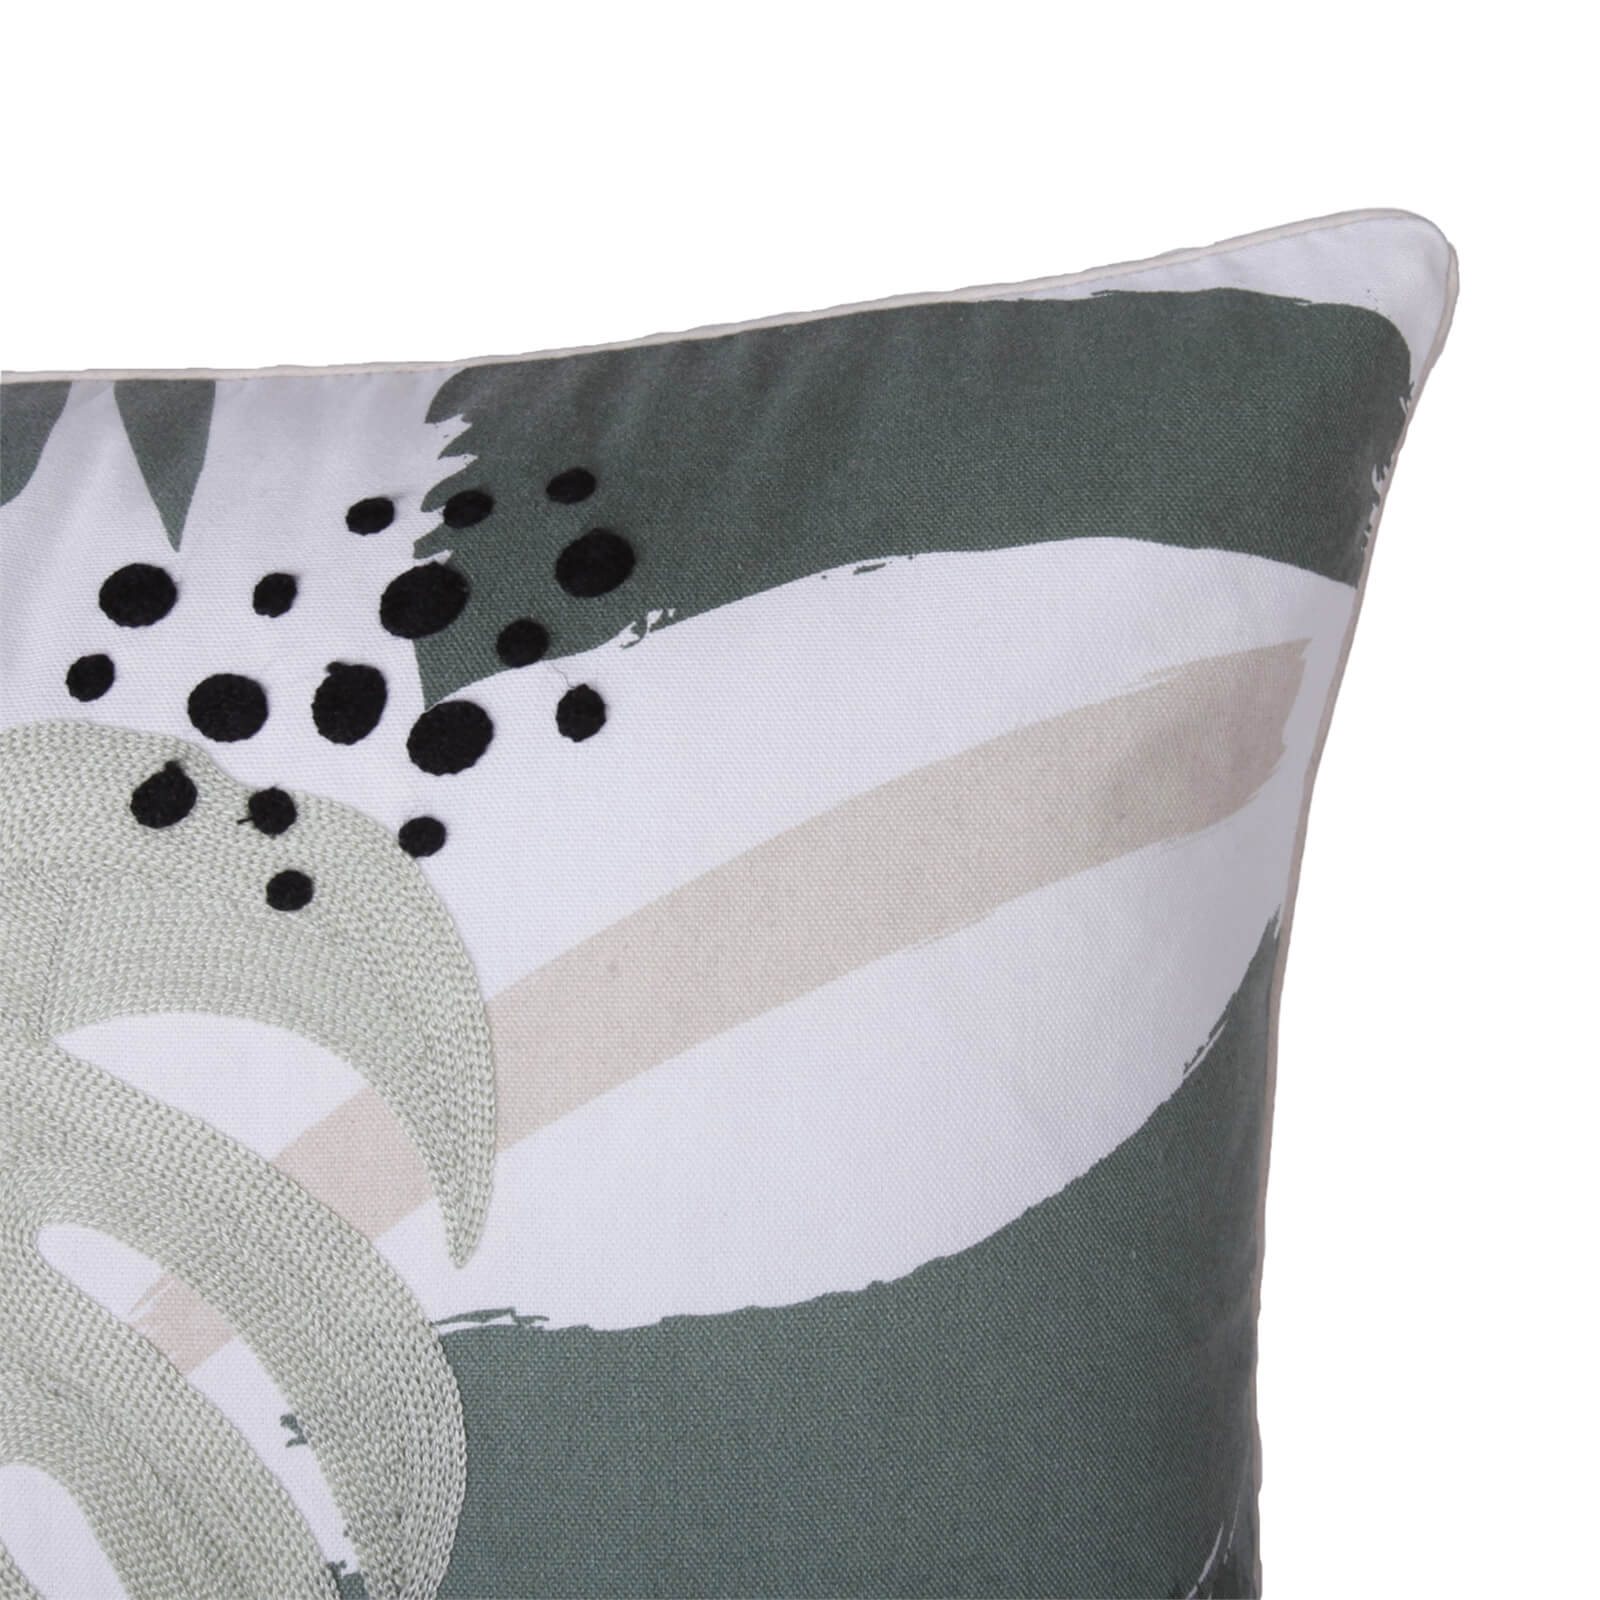 Abstract Floral Cushion - Green & Blush - 45x45cm